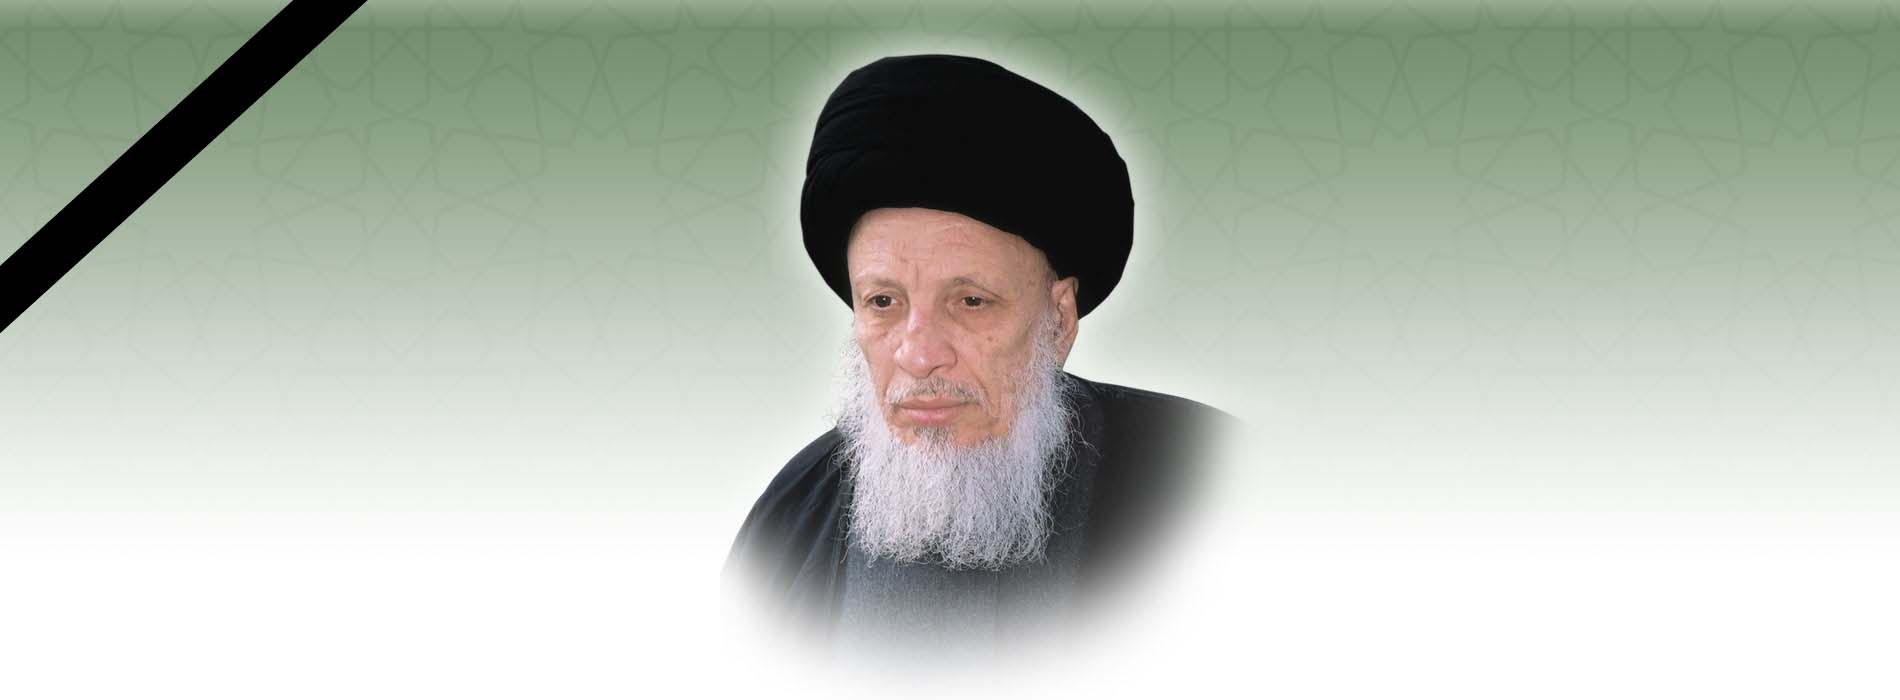 سماحة المرجع الديني الکبير السيد محمد سعيد الطباطبائي الحکيم ـ دام ظله